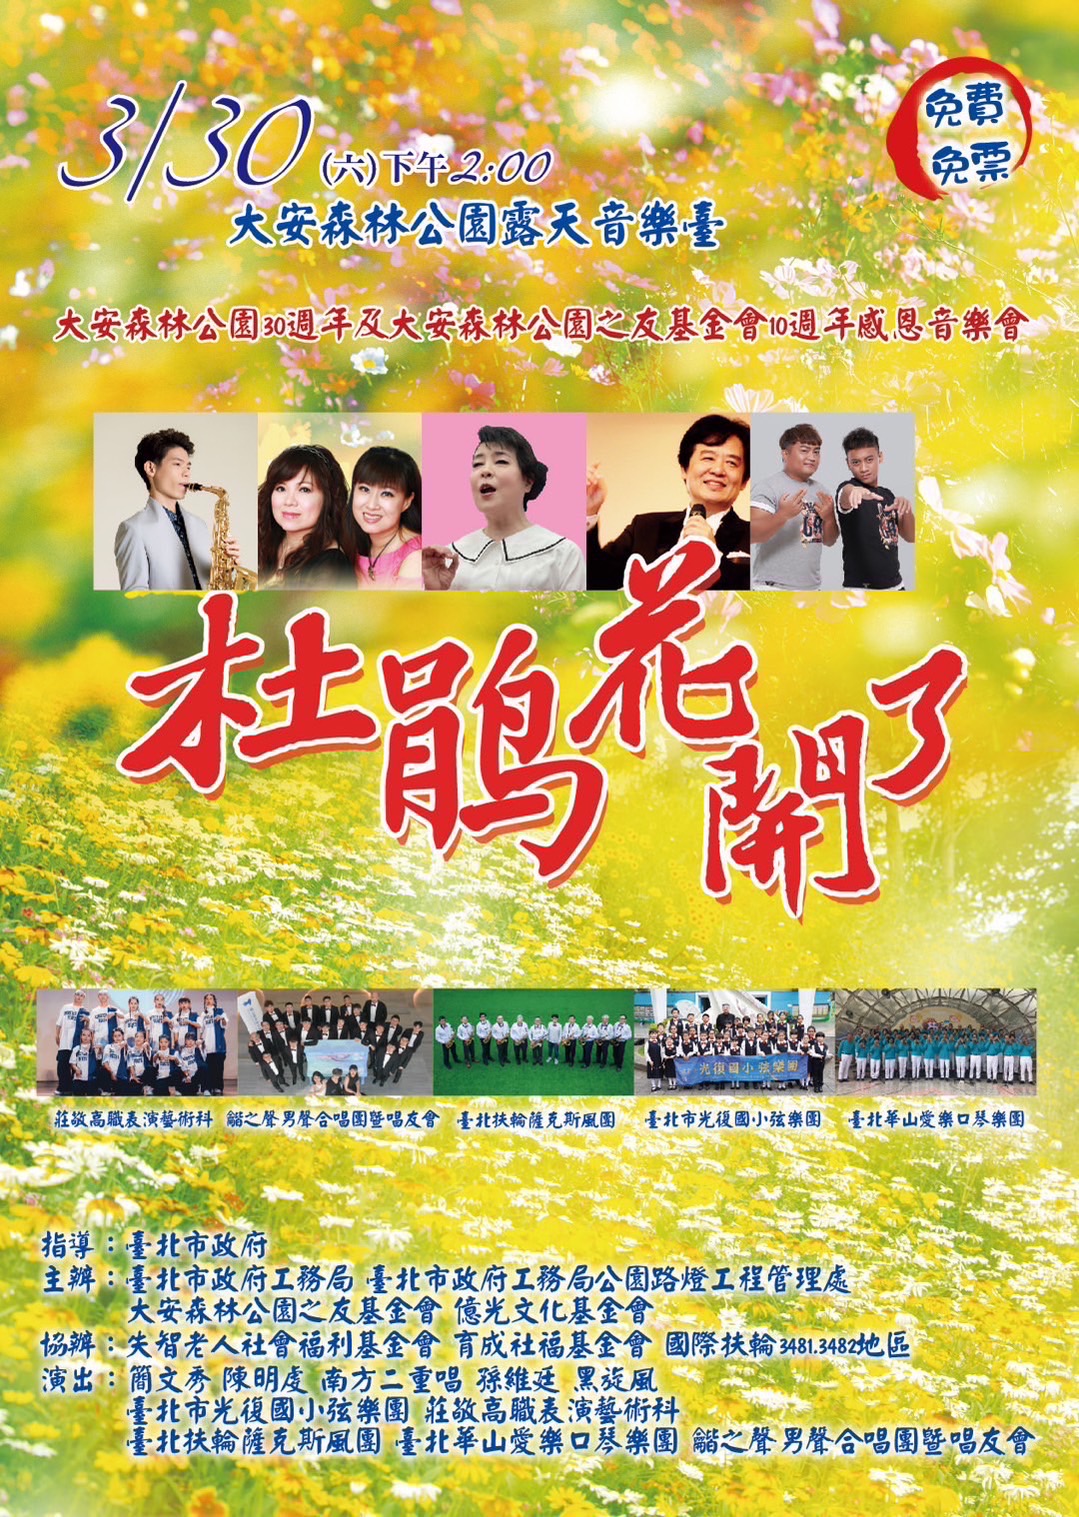 3月30「杜鵑花開了」感恩音樂會 聲樂家簡文秀邀唱「甜蜜蜜」